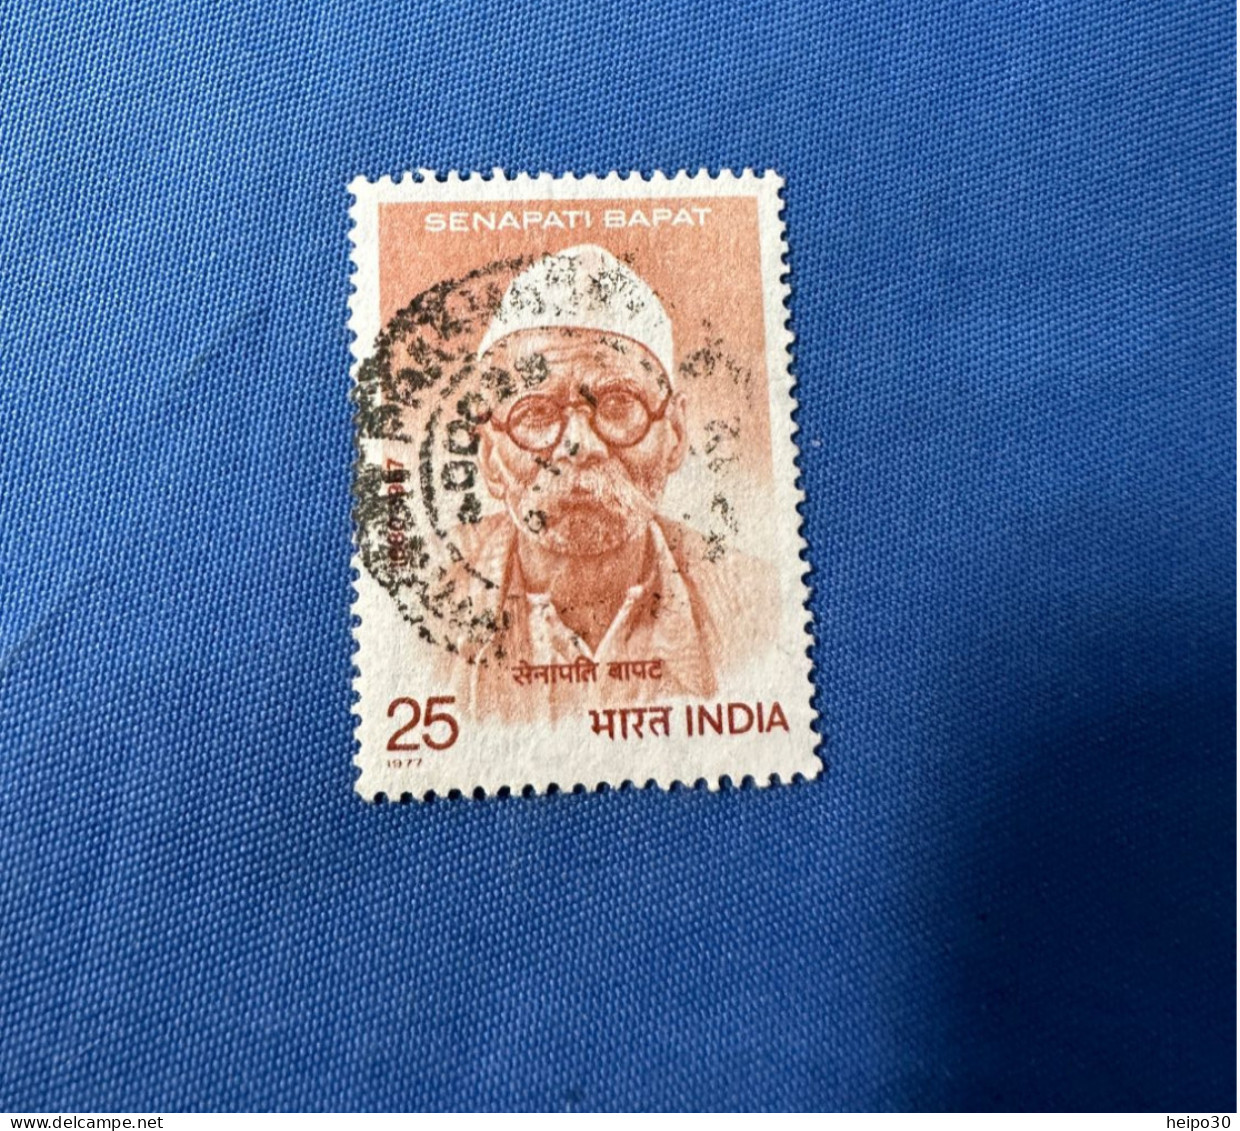 India 1977 Michel 743 Senapati Bapat - Oblitérés